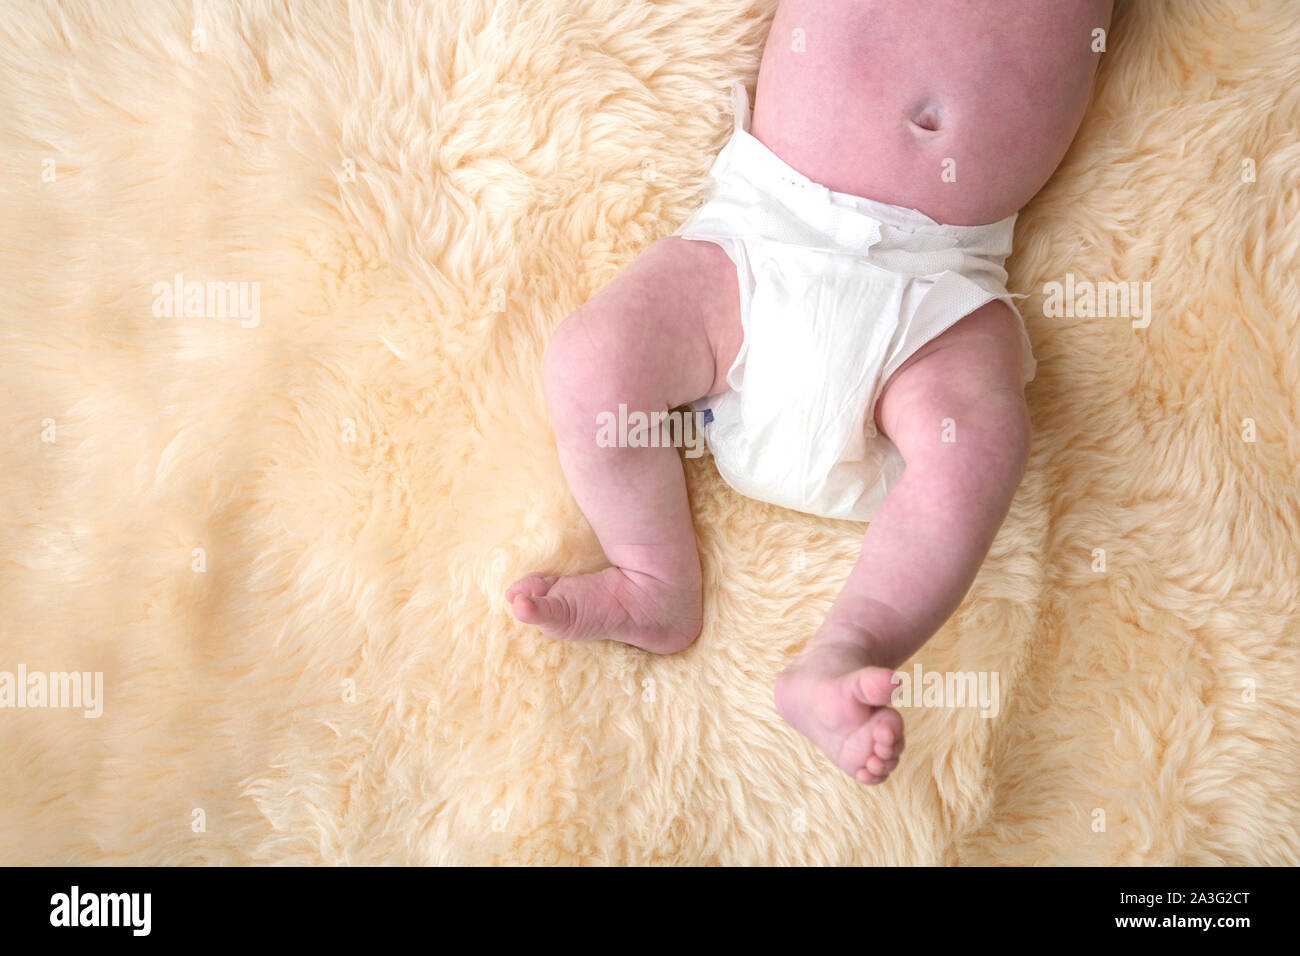 Bébé nouveau-né les jambes avec couche blanche, couche sur un fond de la  fourrure Photo Stock - Alamy